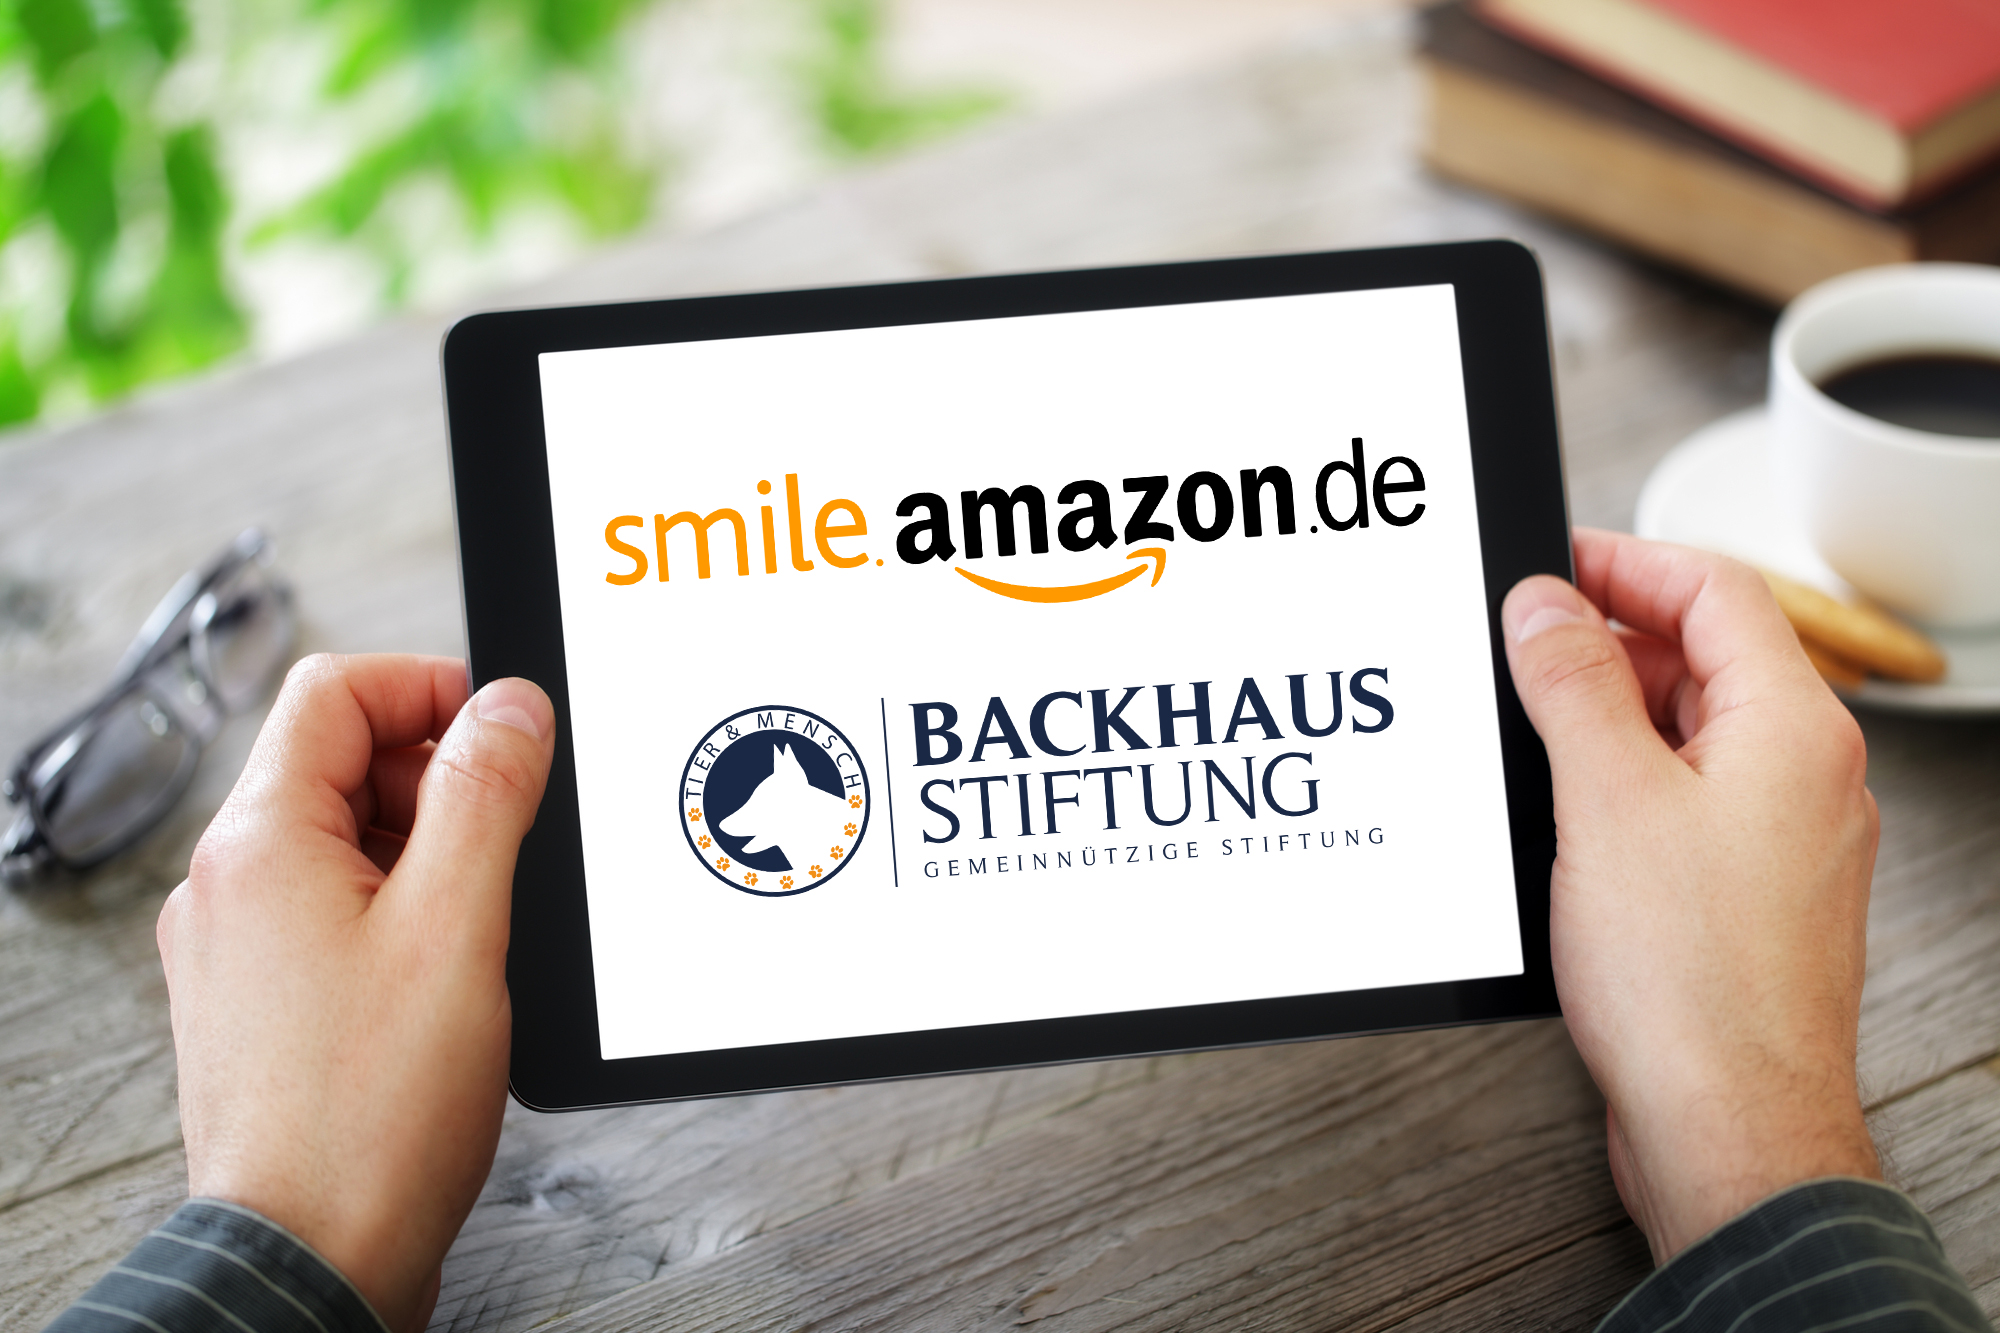 Backhaus Stiftung für Amazon Spendenprogramm verifiziert